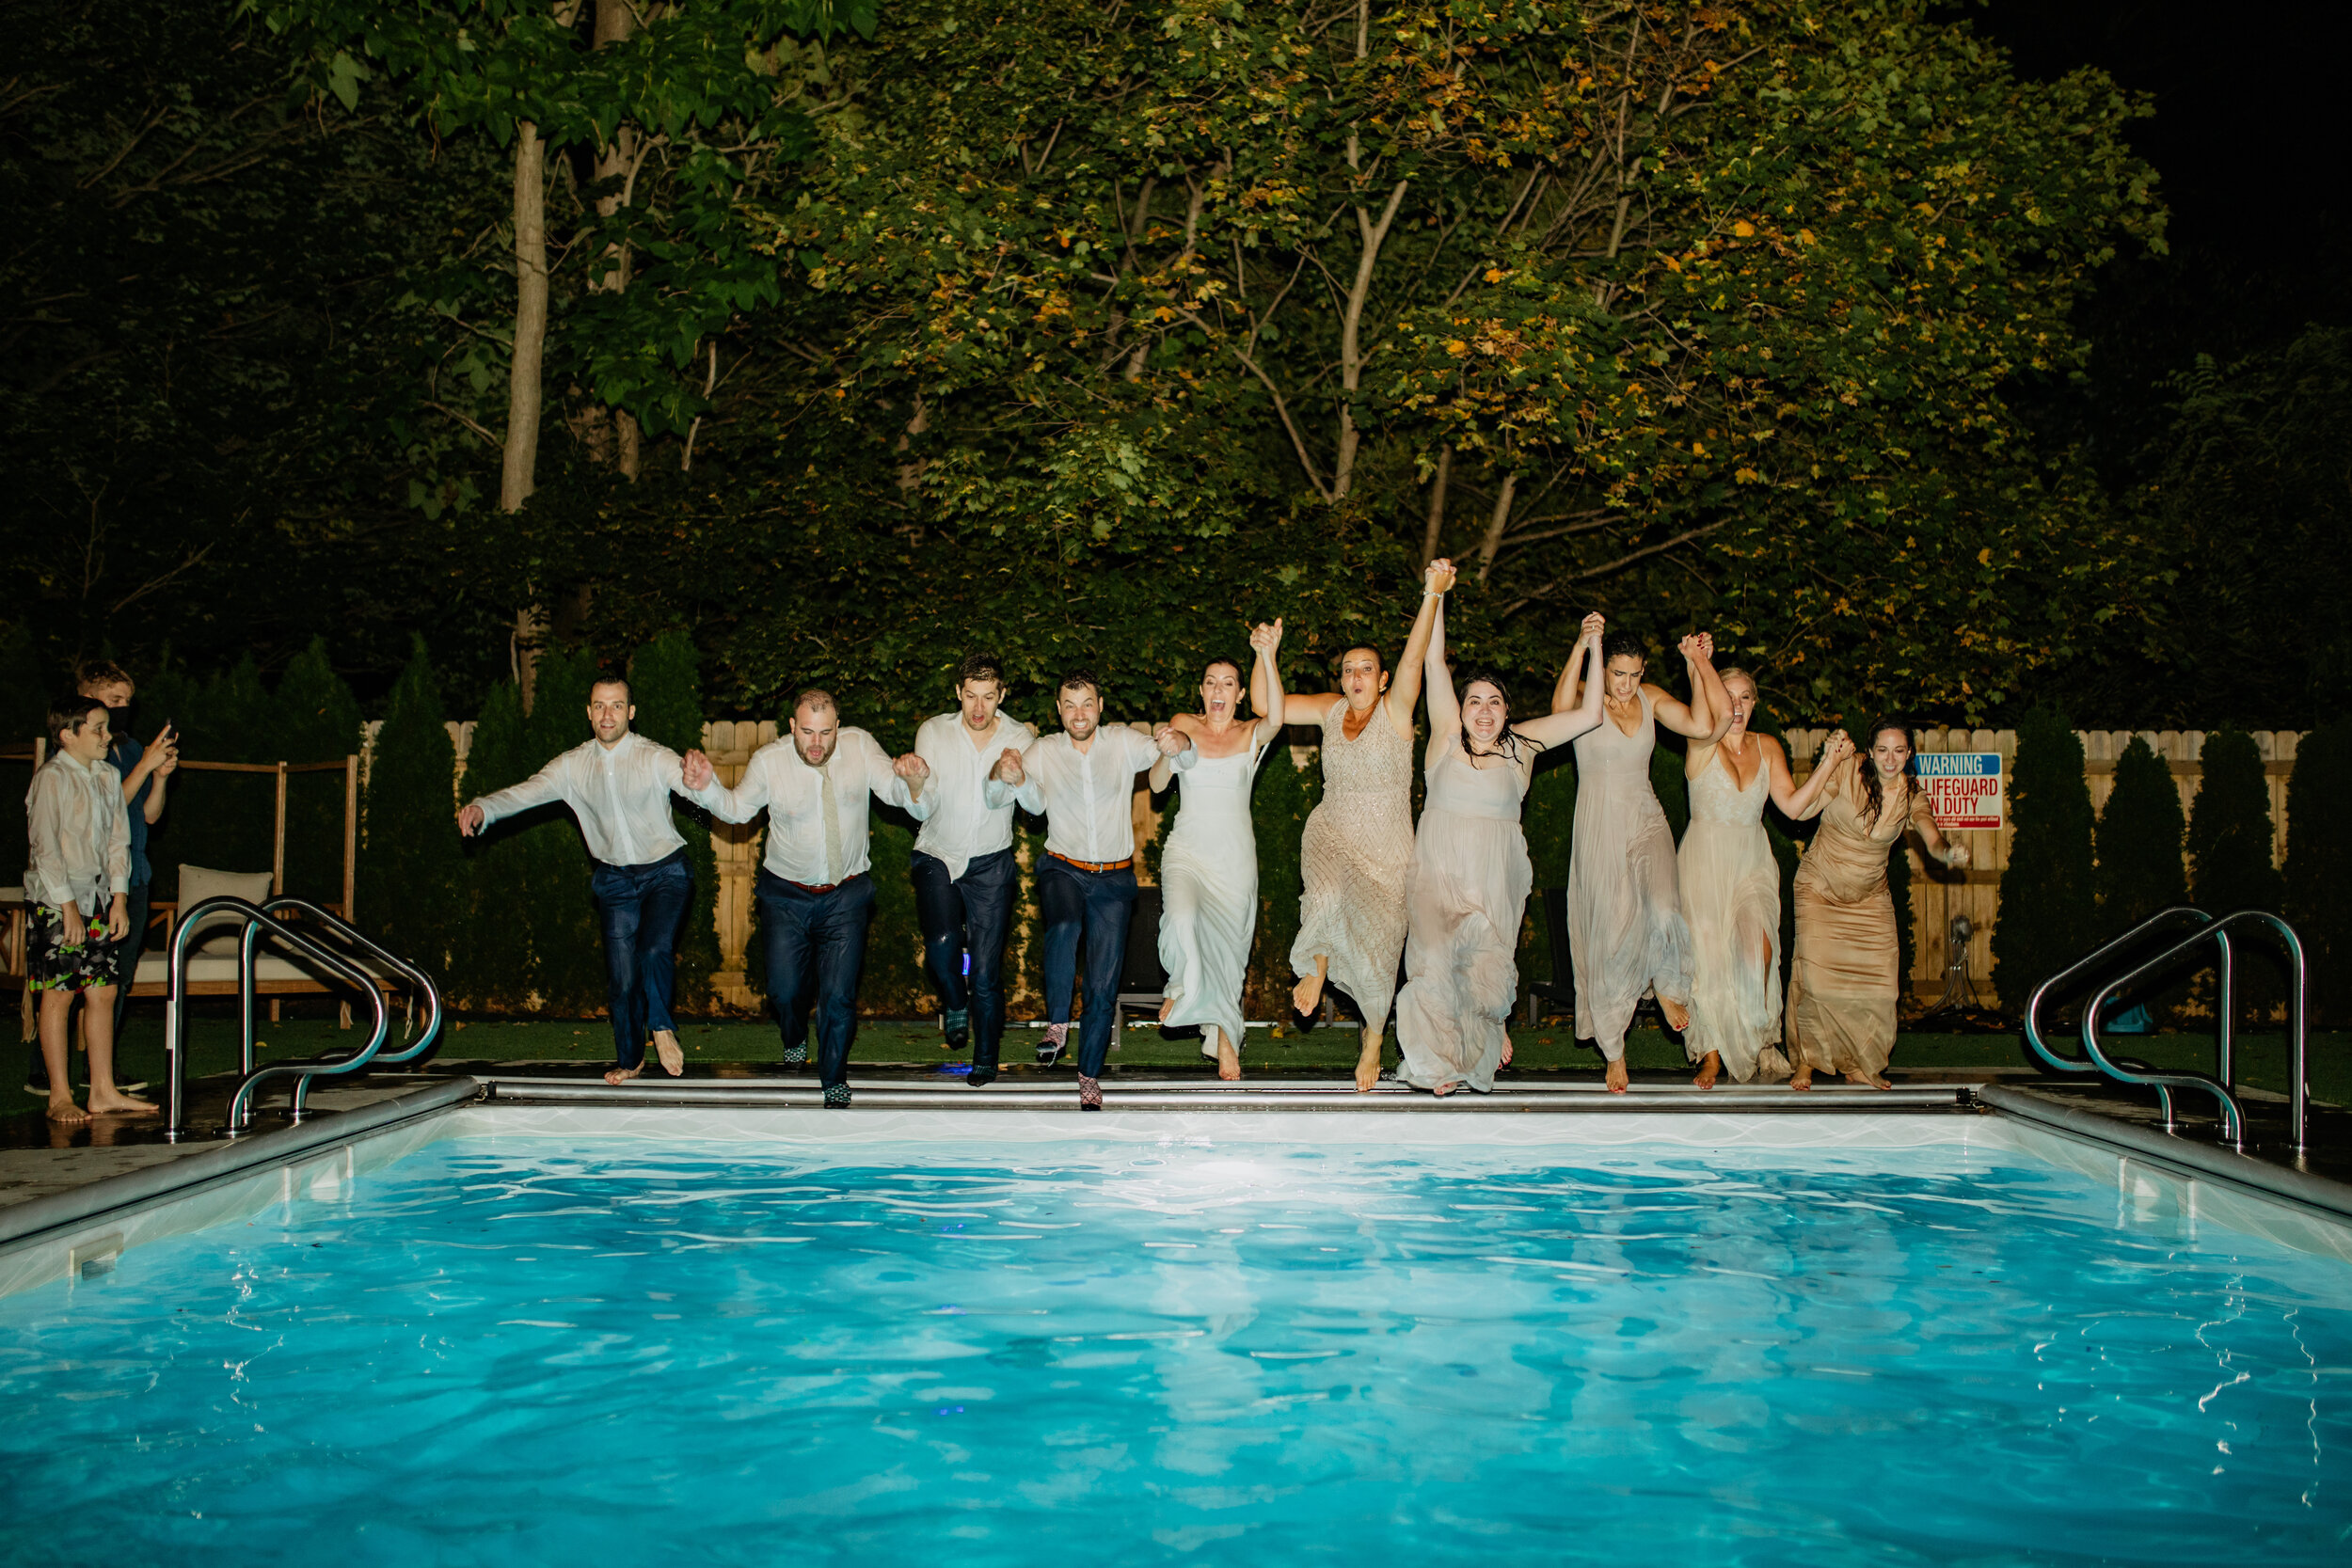 Airbnb Wedding Idea - jump into a pool!